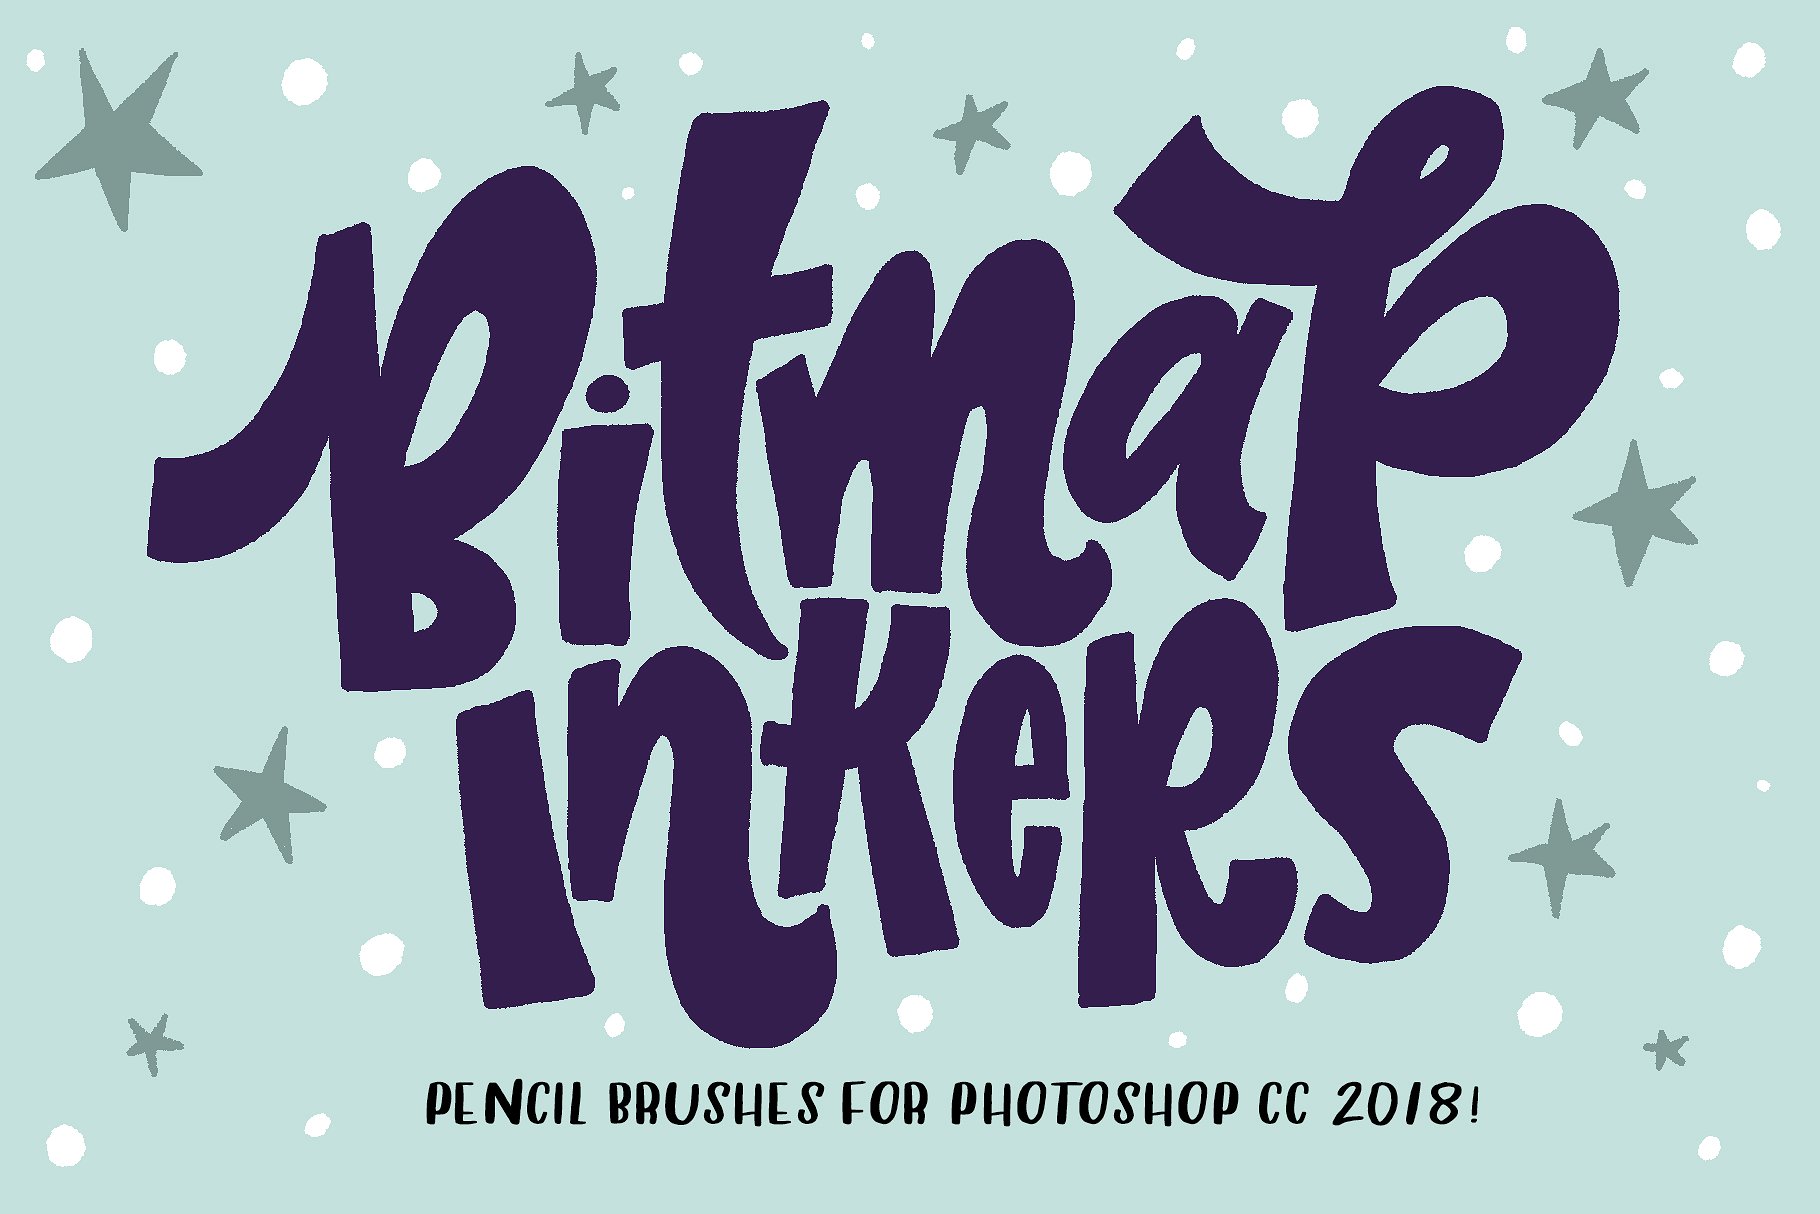 笔刷效果 Bitmap Inkers for PHOTOSH